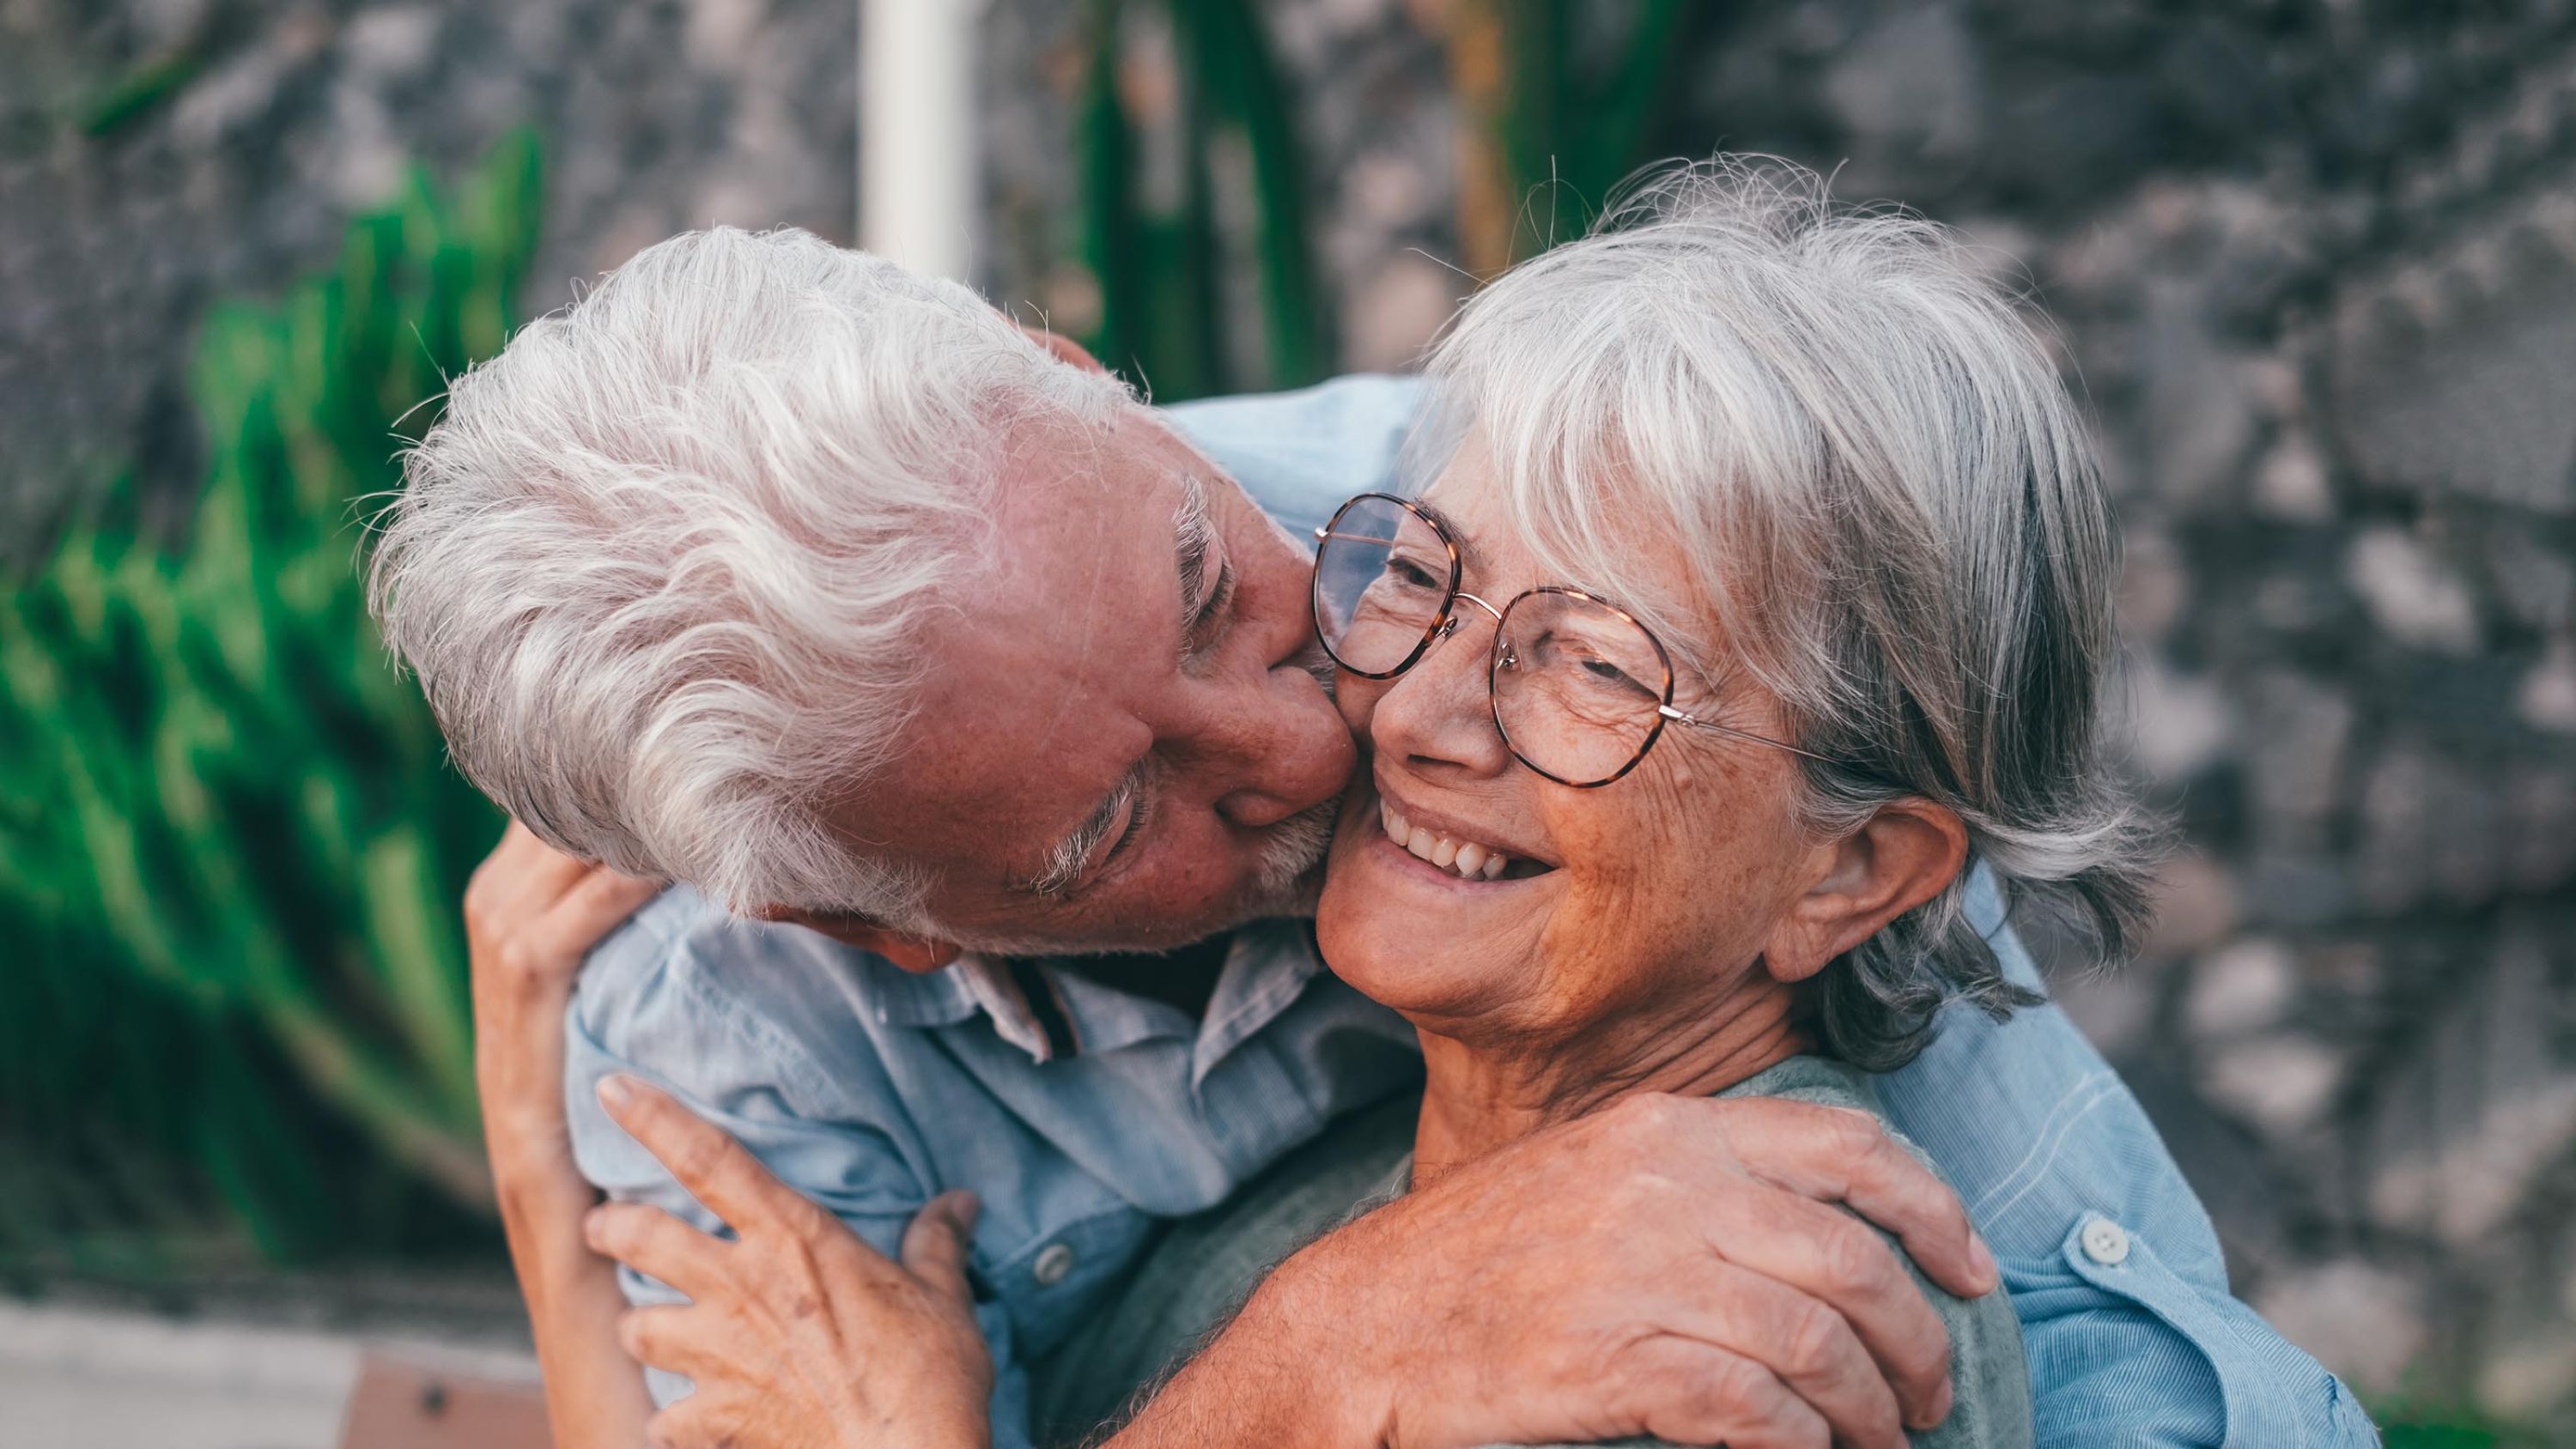 Un homme âgé prend une femme âgée dans ses bras et l'embrasse sur la joue.